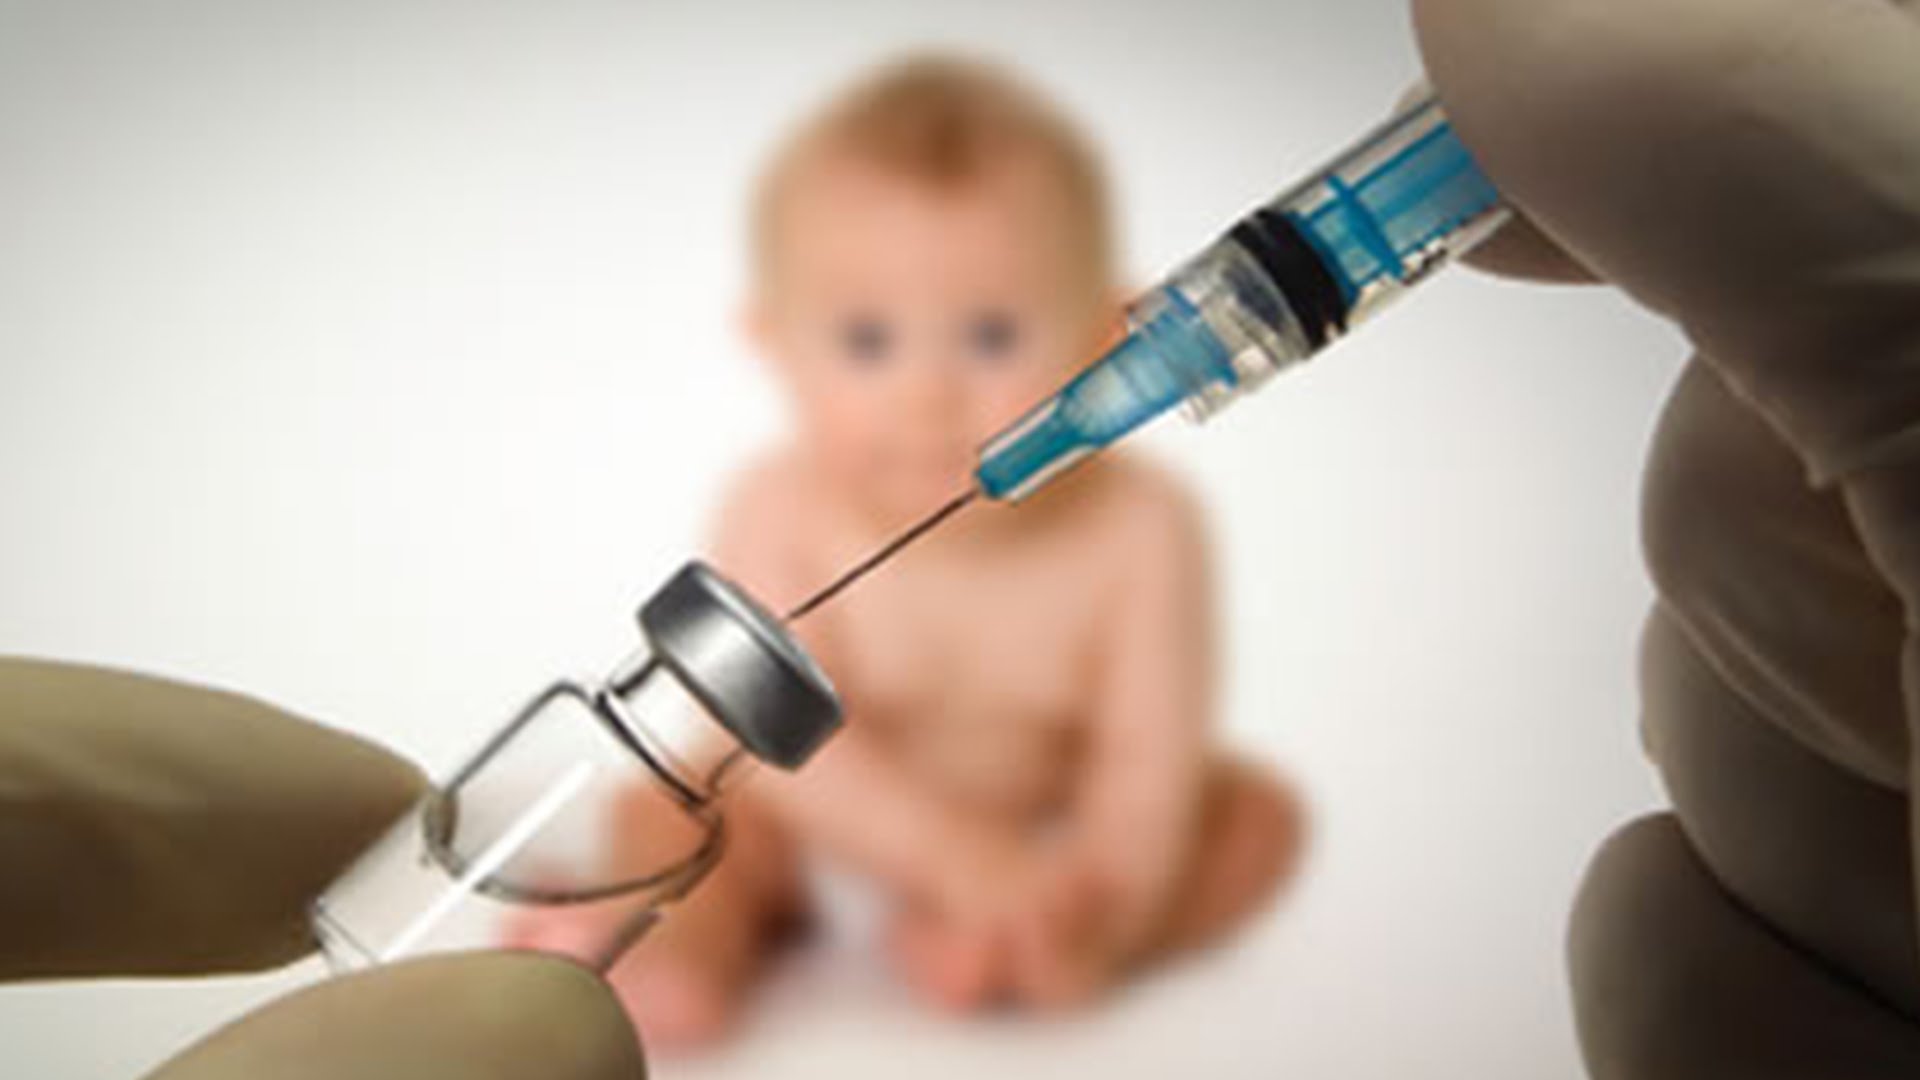 Σοβαρές διαστάσεις λαμβάνει το αντιεμβολιαστικό κίνημα στις ΗΠΑ